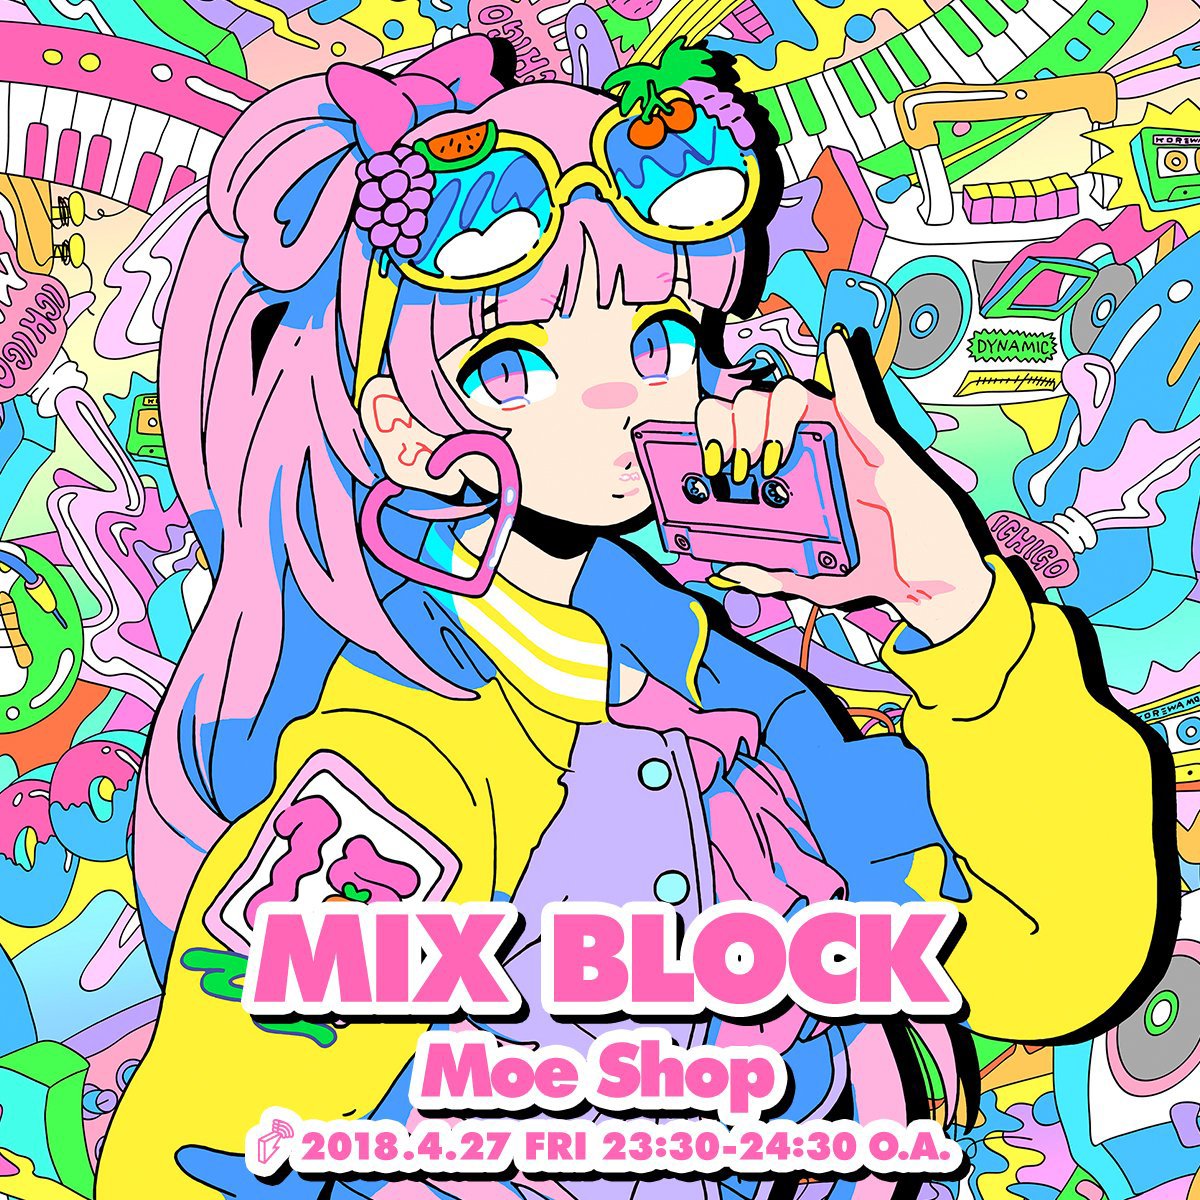 ...https://soundcloud.com/mixblockbfm/20180427-mix-block-moe-shop . 